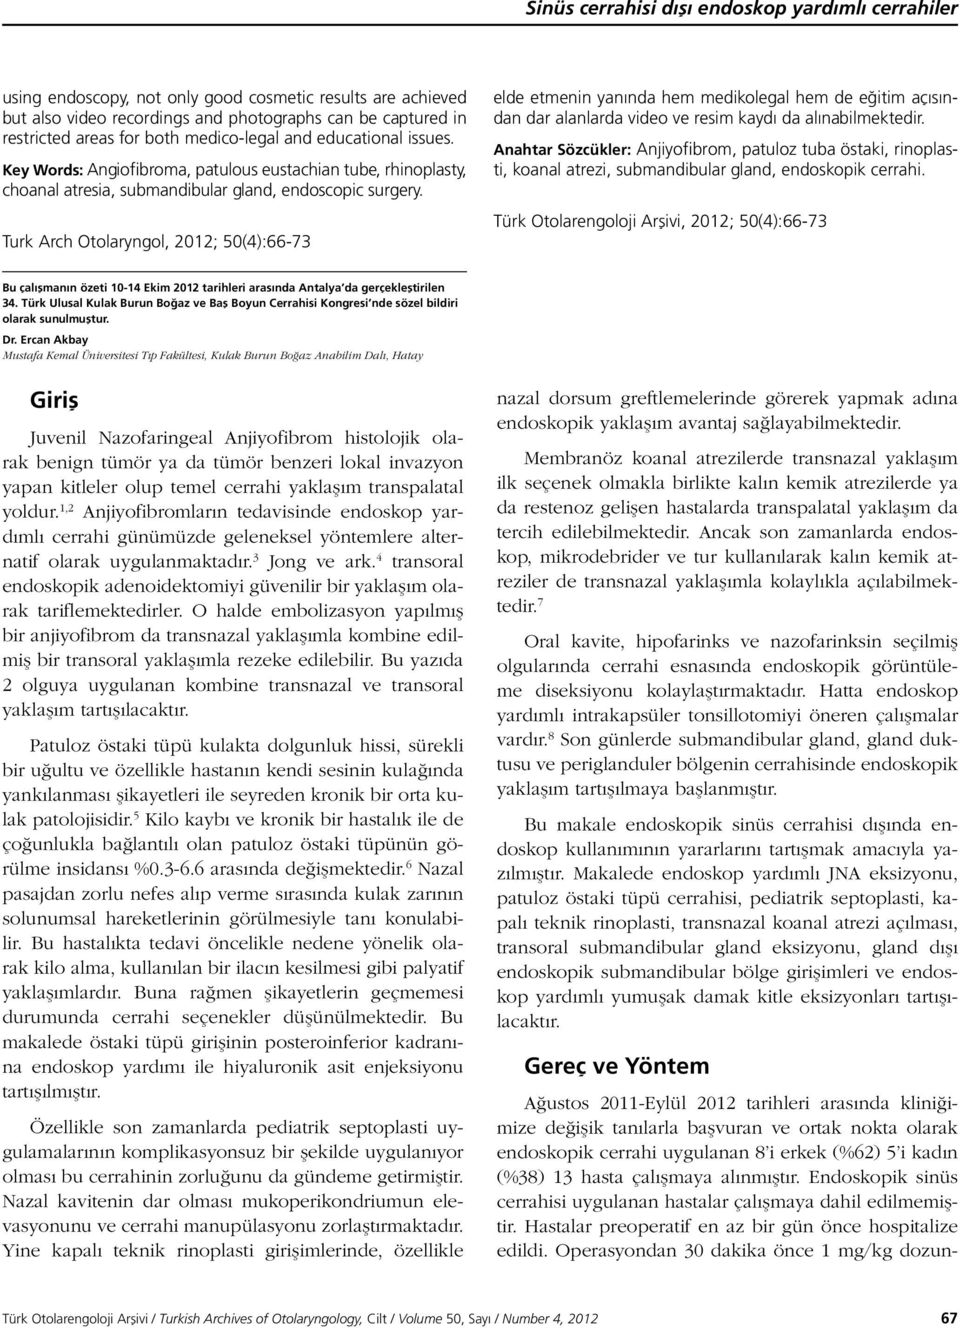 Turk Arch Otolaryngol, 2012; 50(4):66-73 Ağustos 2011-Eylül 2012 tarihleri arasında kliniğimize değişik tanılarla başvuran ve ortak nokta olarak endoskopik cerrahi uygulanan 8 i erkek (%62) 5 i kadın